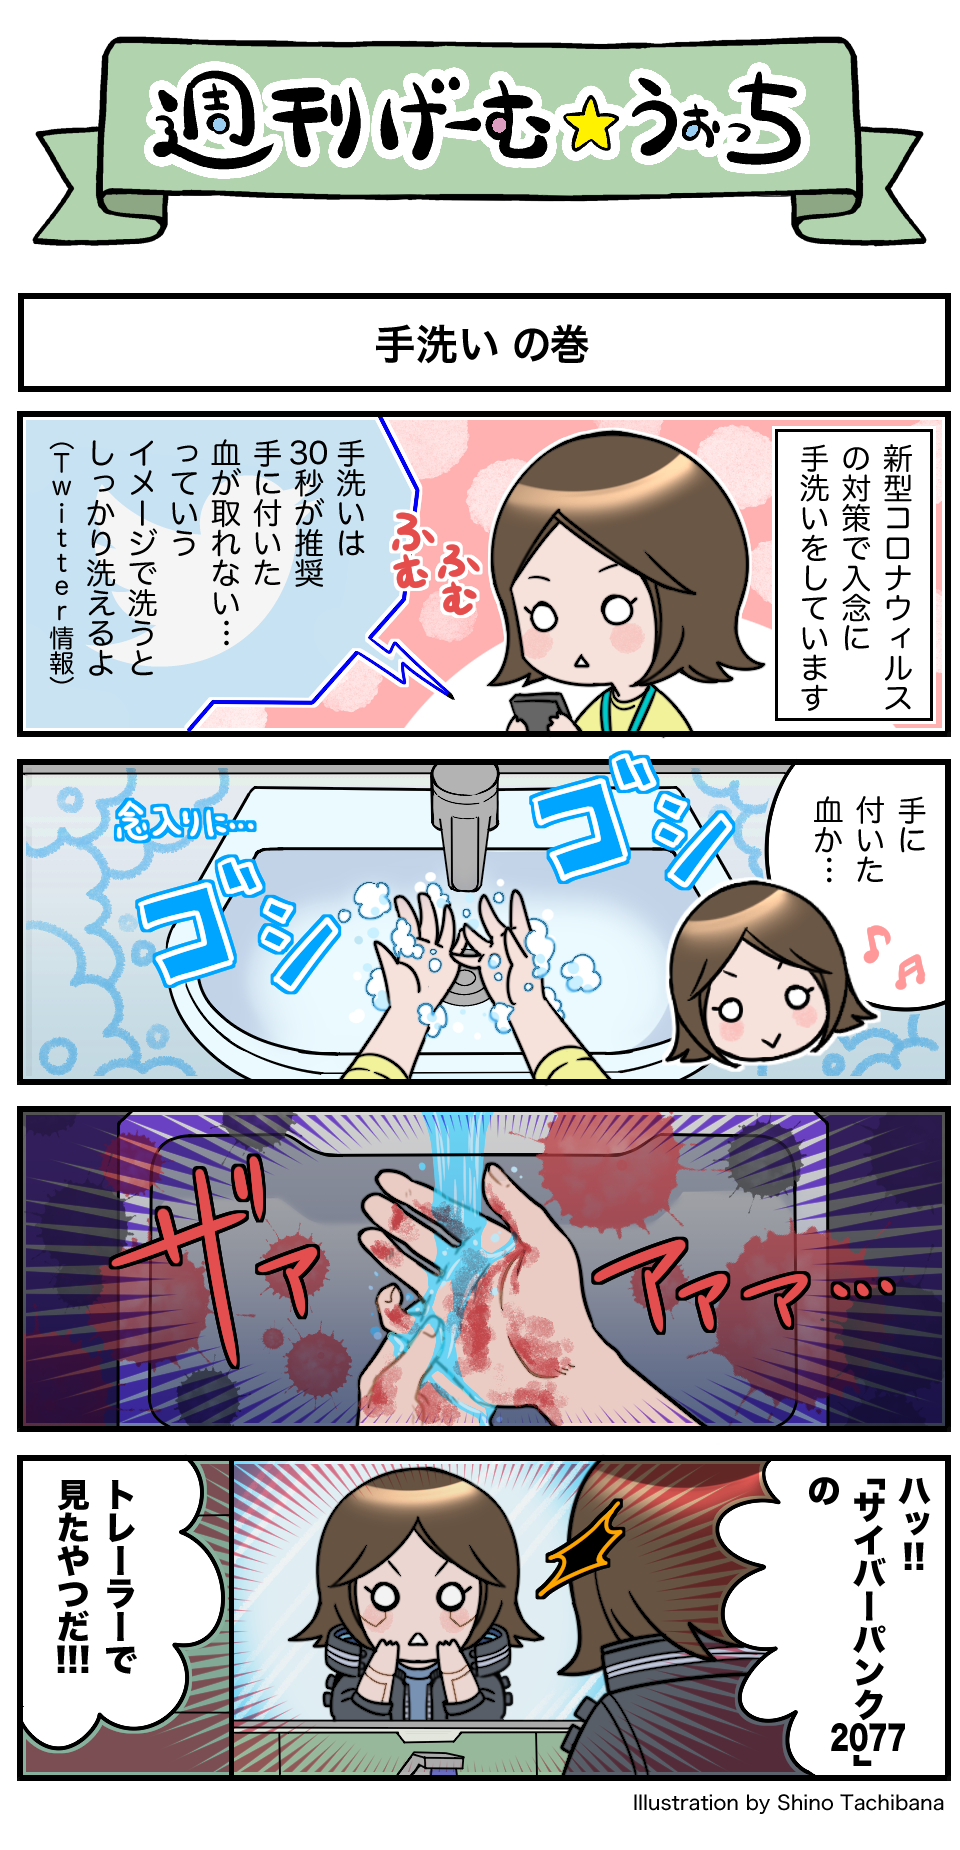 週刊げーむ うぉっち マンガ 第104回 手洗い Game Watch